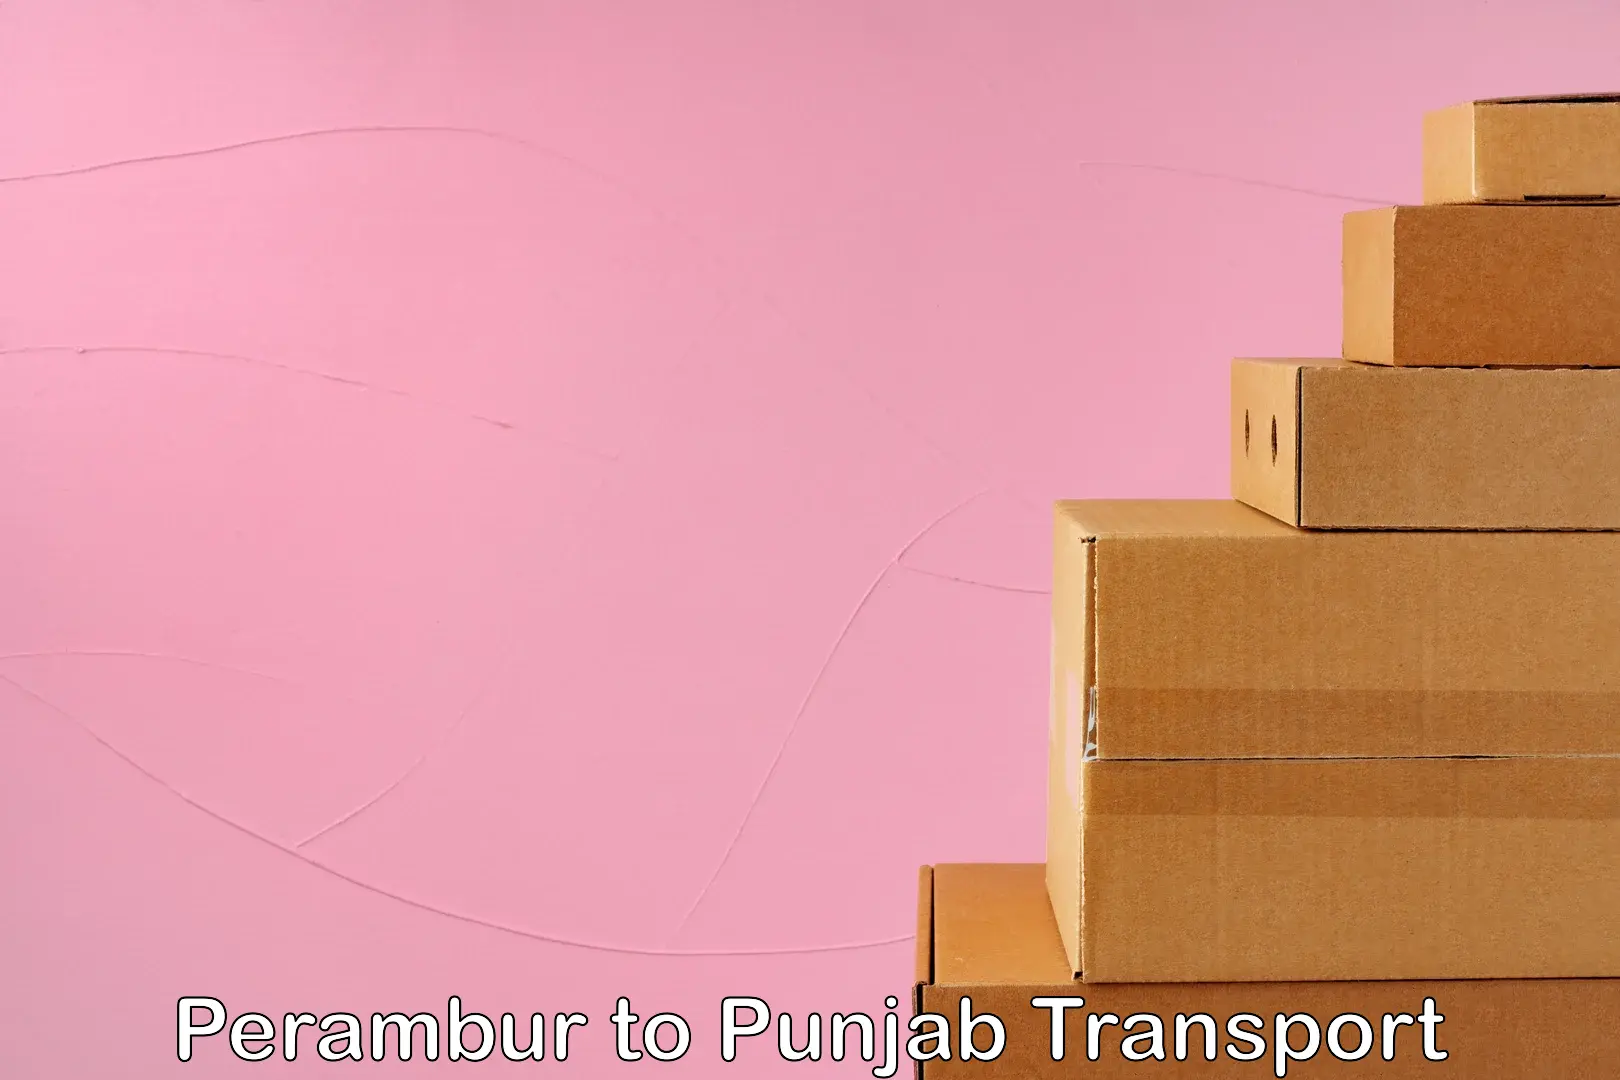 Commercial transport service Perambur to Amritsar